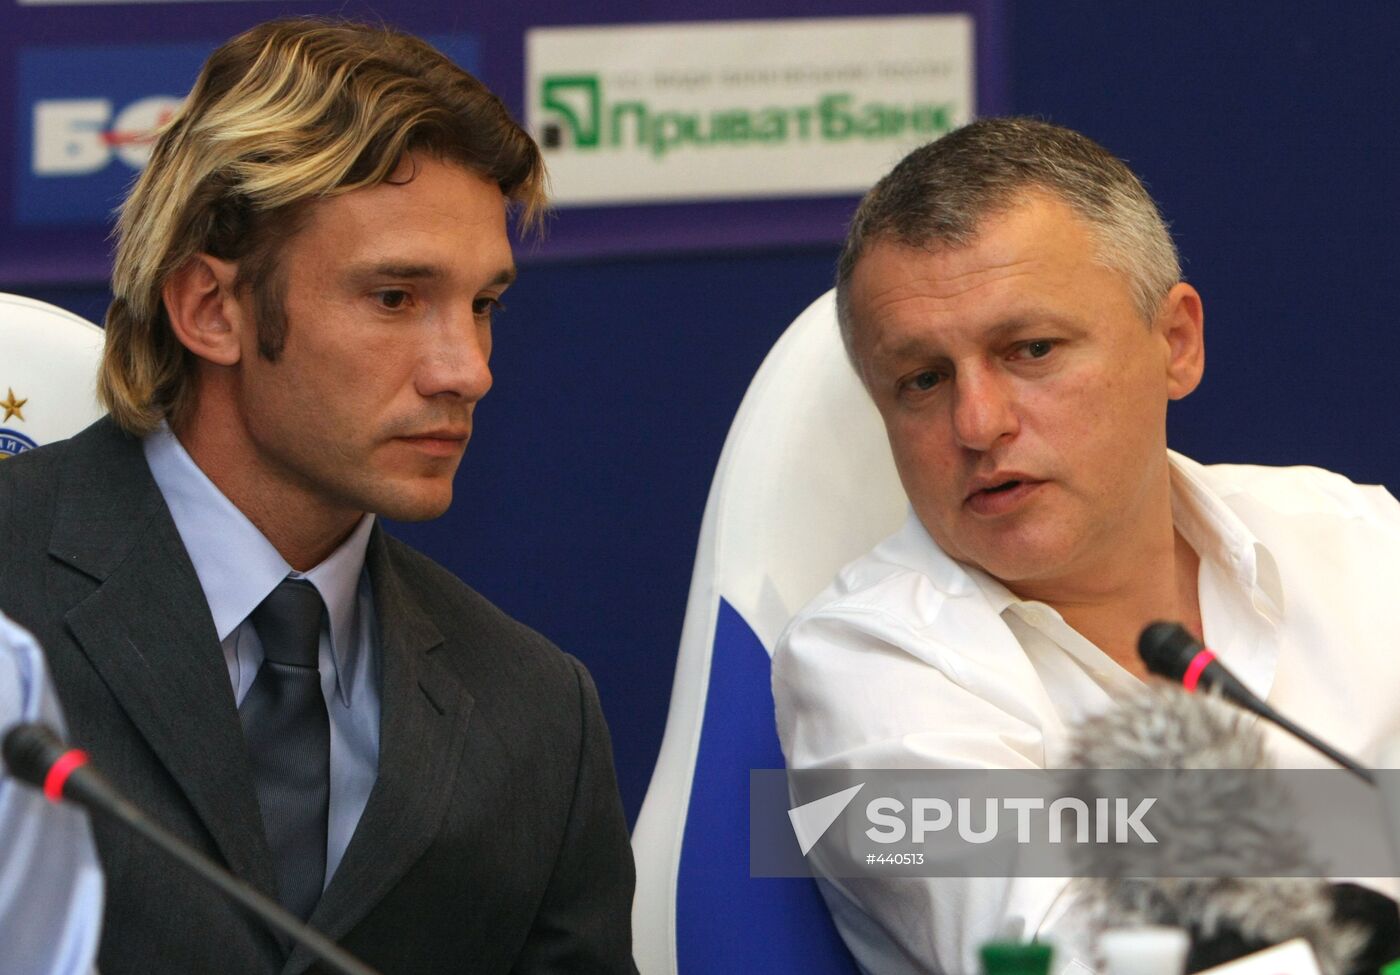 Andriy Shevchenko introduced as FC Dynamo player